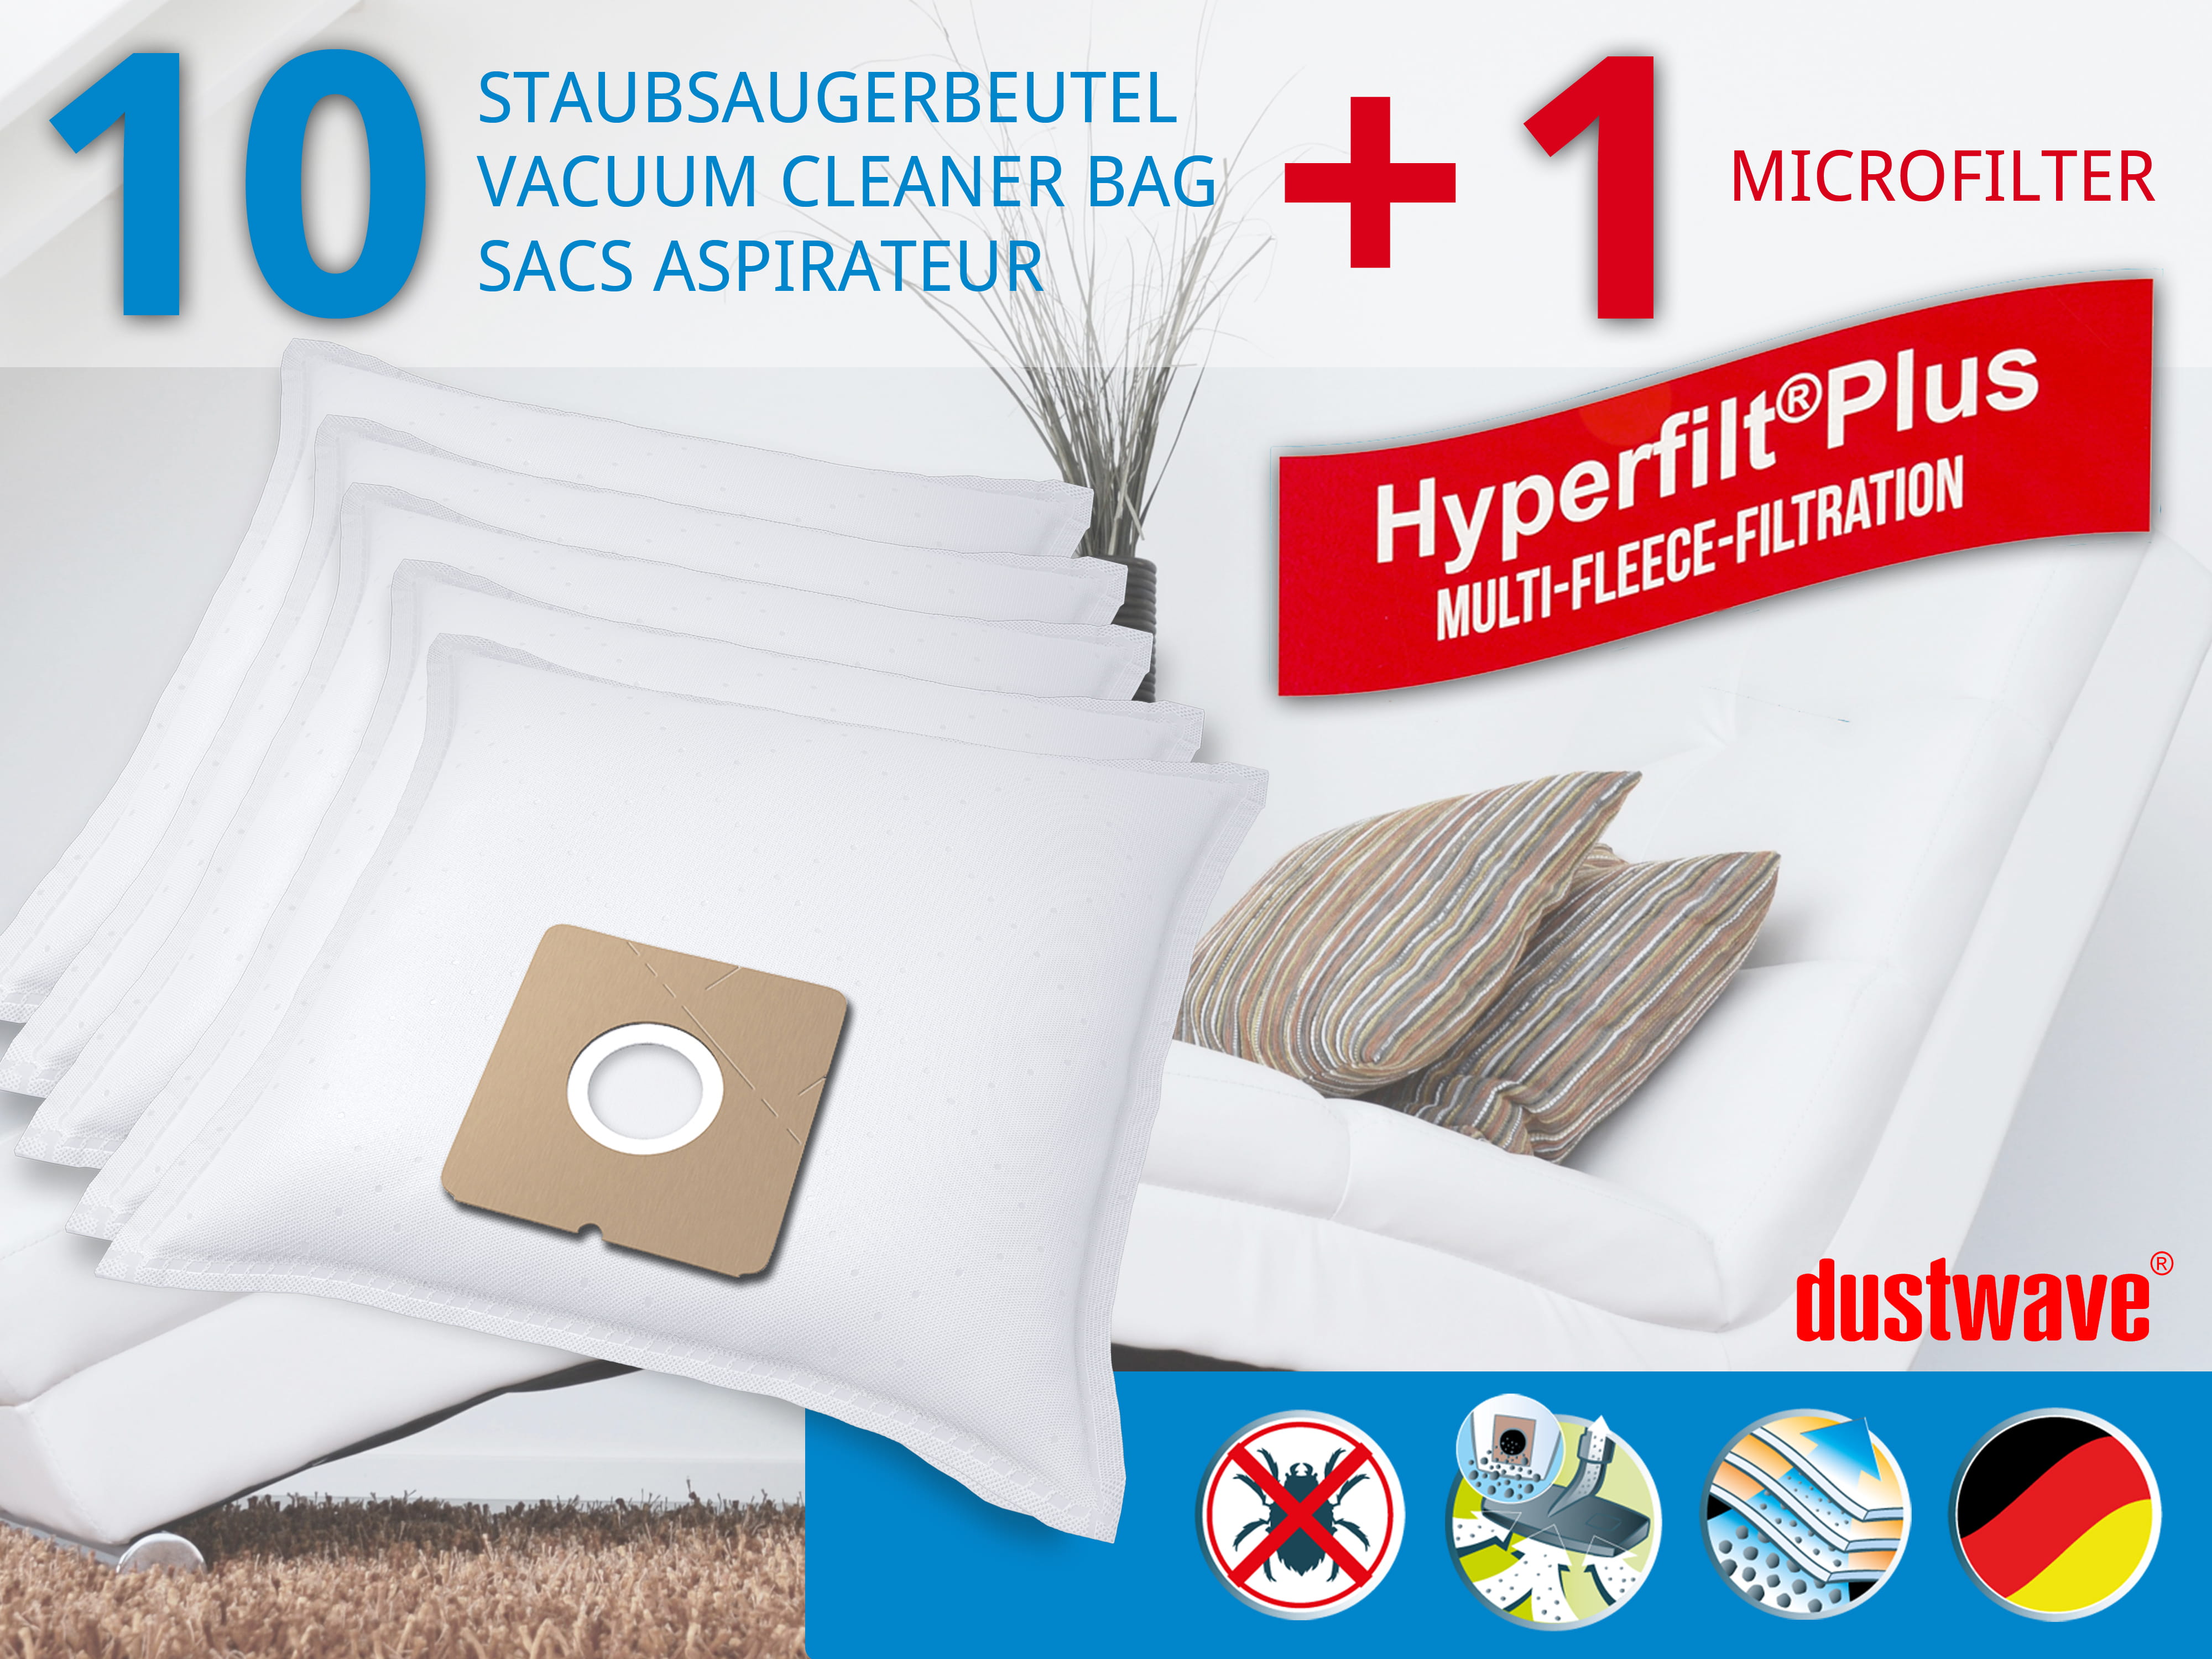 Dustwave® 10 Staubsaugerbeutel für Hoover S1248001 / TRS1248001 - hocheffizient, mehrlagiges Mikrovlies mit Hygieneverschluss - Made in Germany